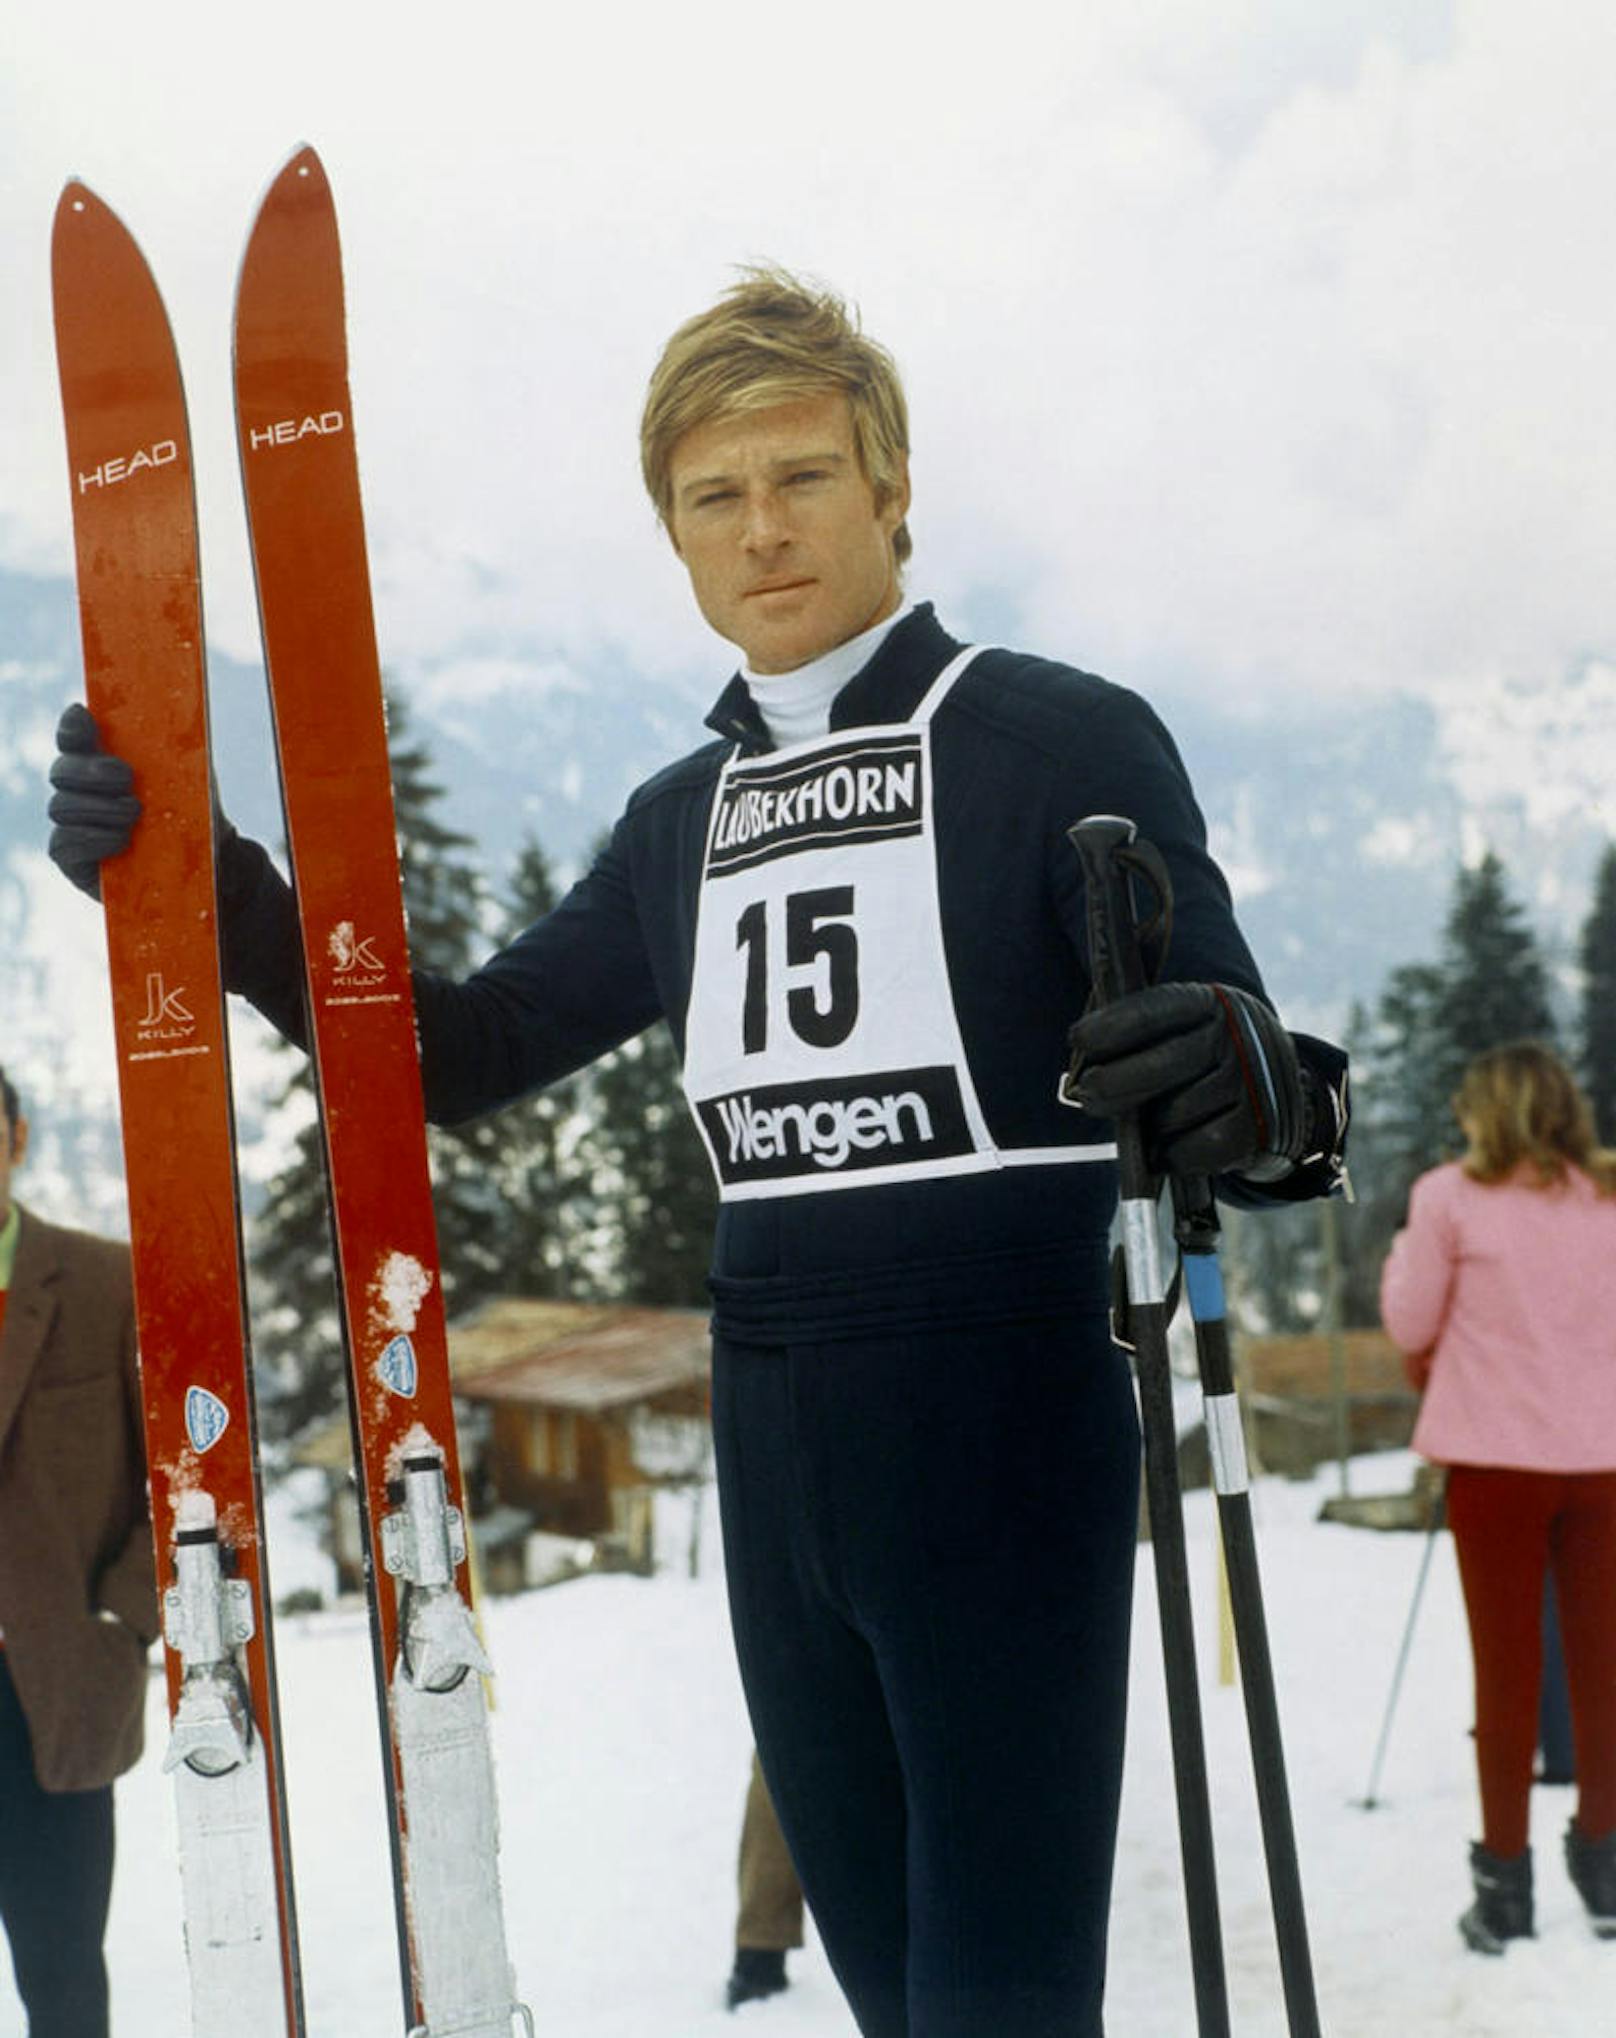 Robert Redford in "Schußfahrt" ("Downhill Racer"), 1969.